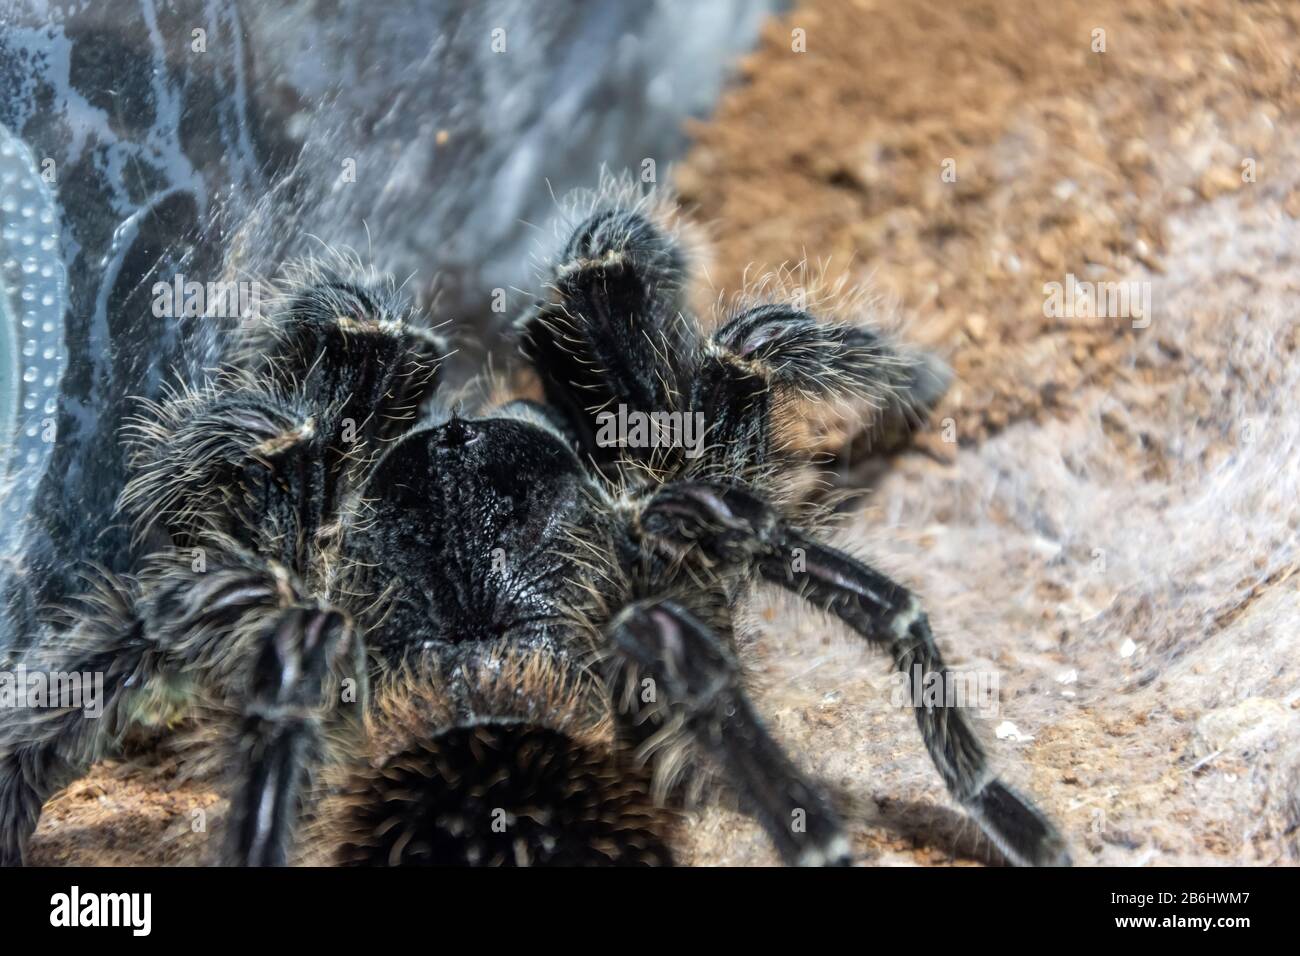 Die schwarze Tarantula Grammostola Pulchra-Spinne sitzt auf dem Boden in der Nahsicht Stockfoto